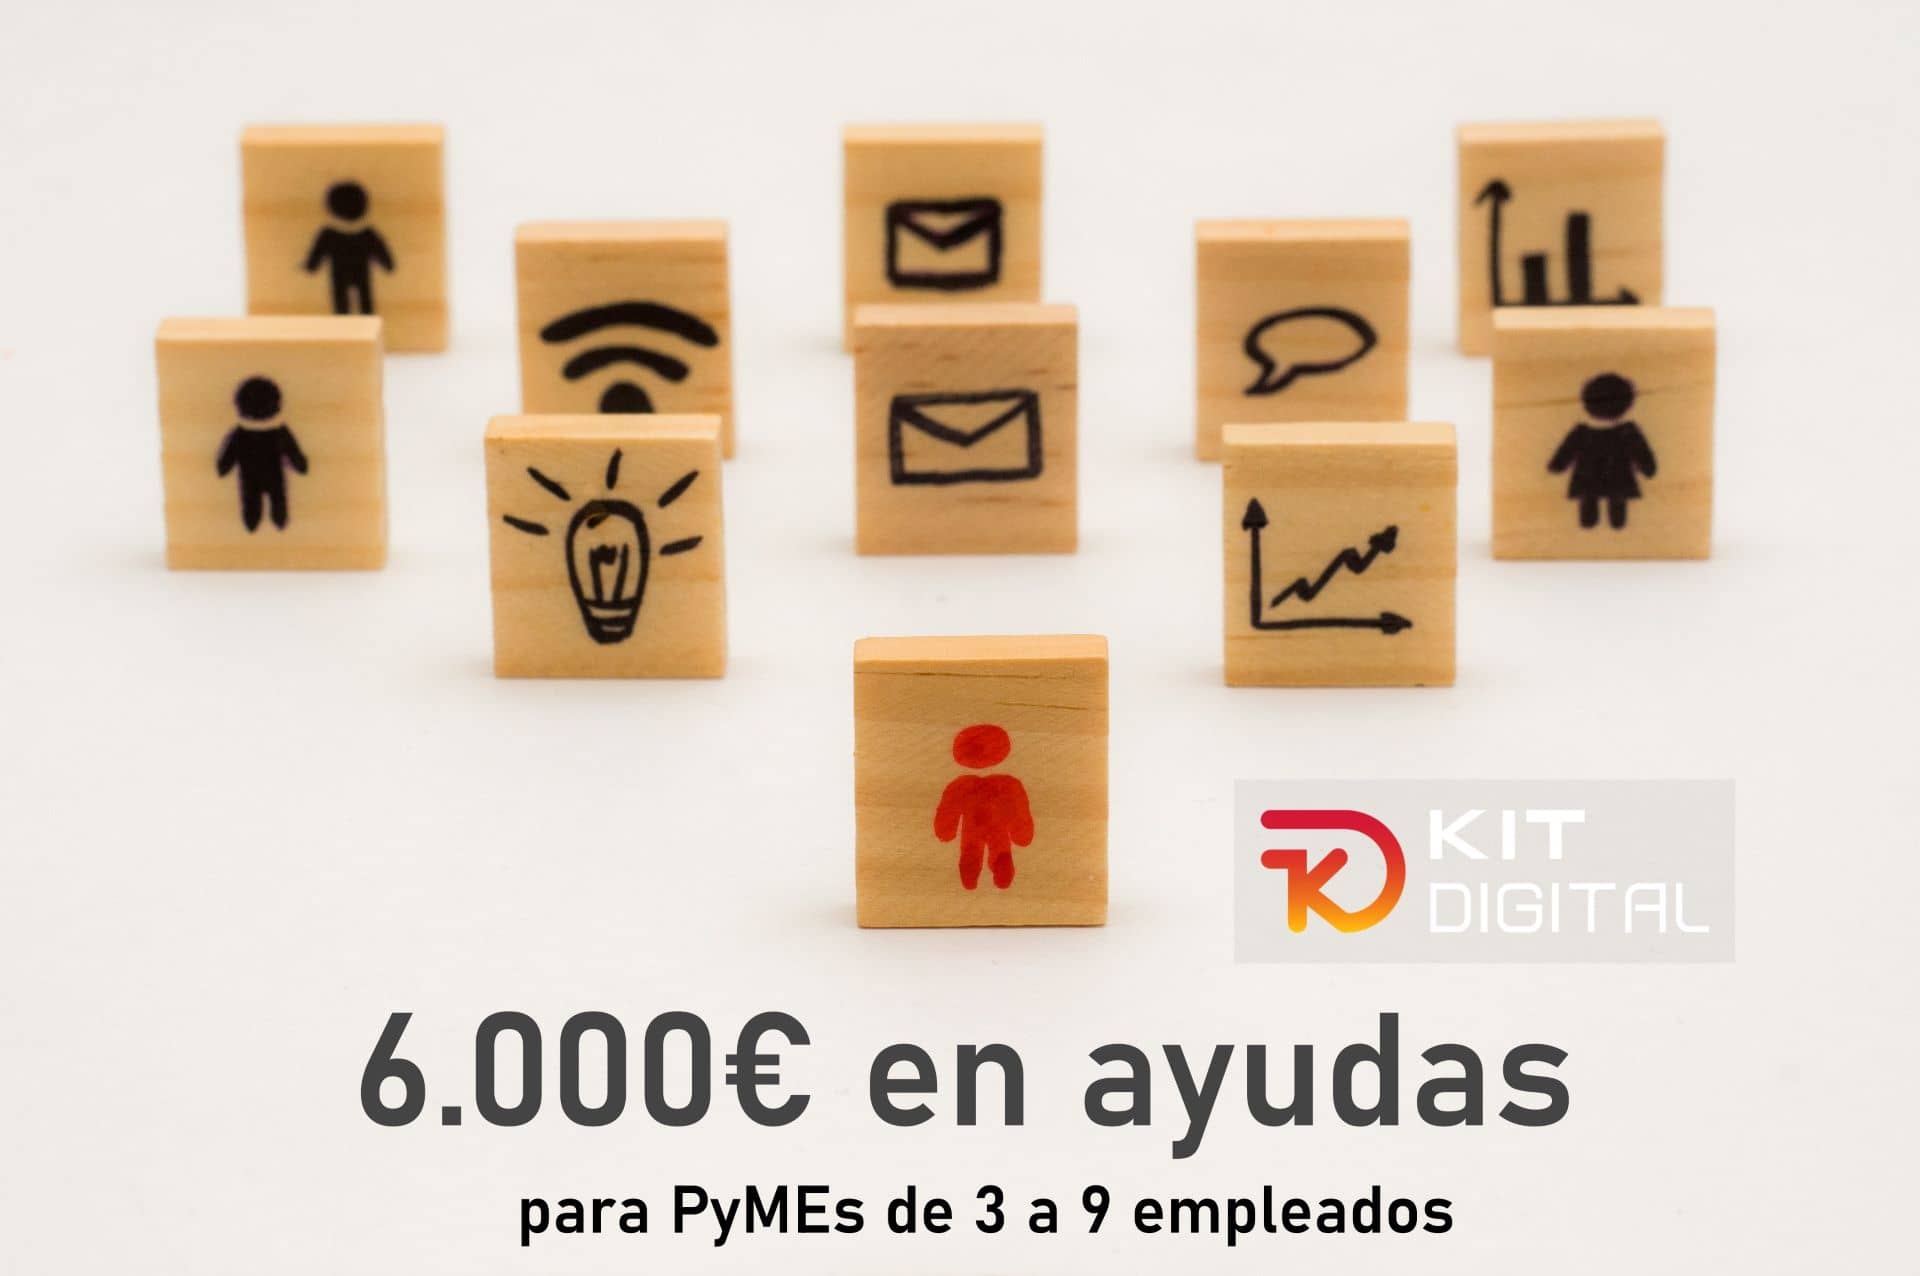 Premisas para solicitar el Kit Digital para PyMEs de 3 a 9 empleados